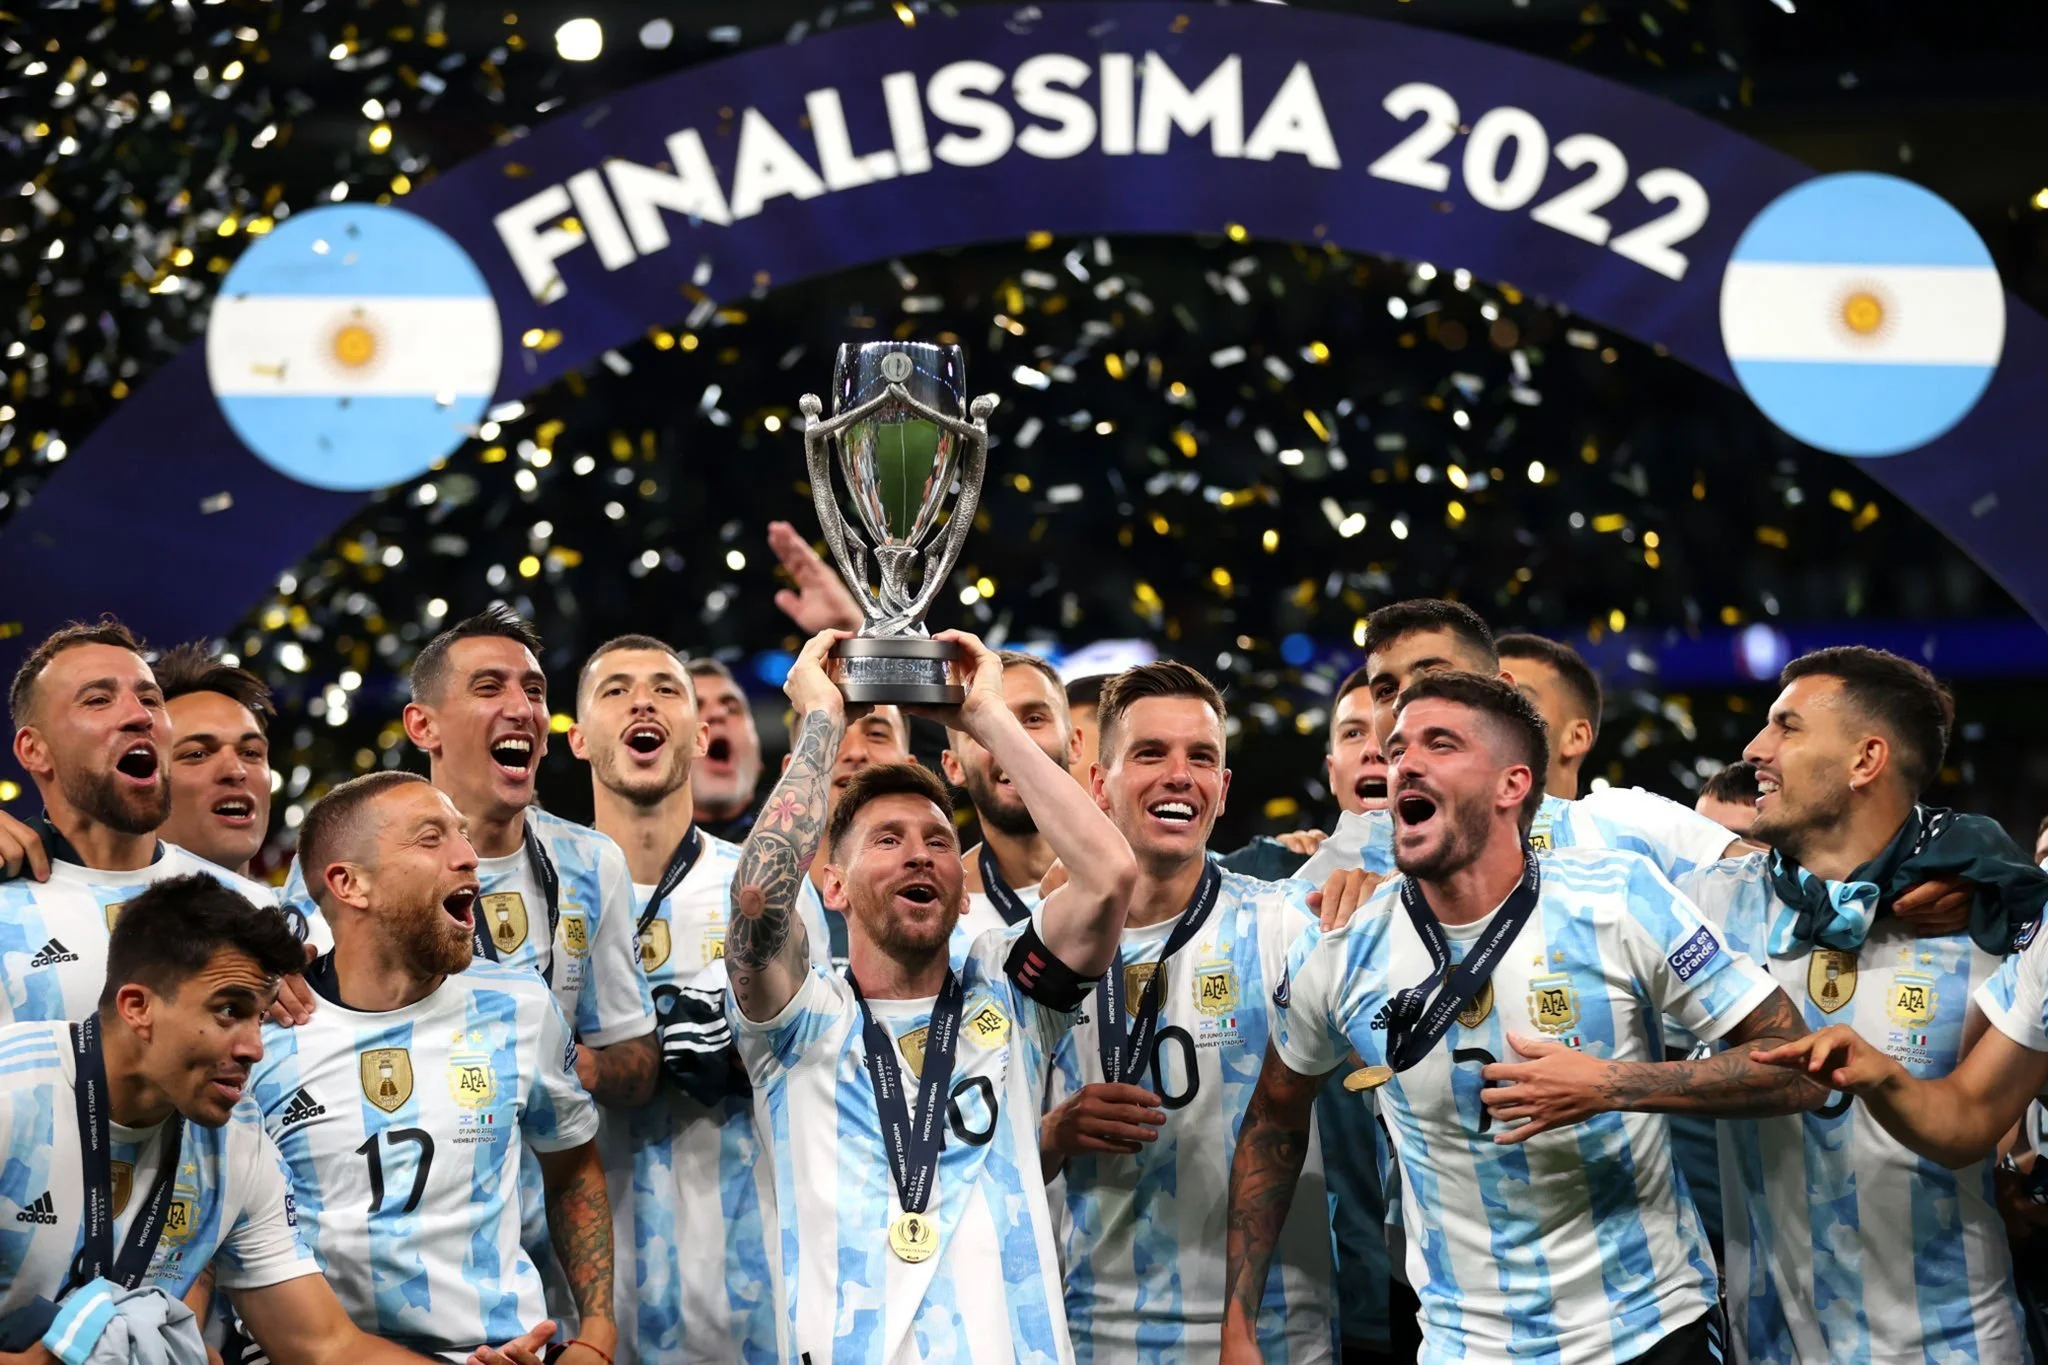 Argentina World Cup bid